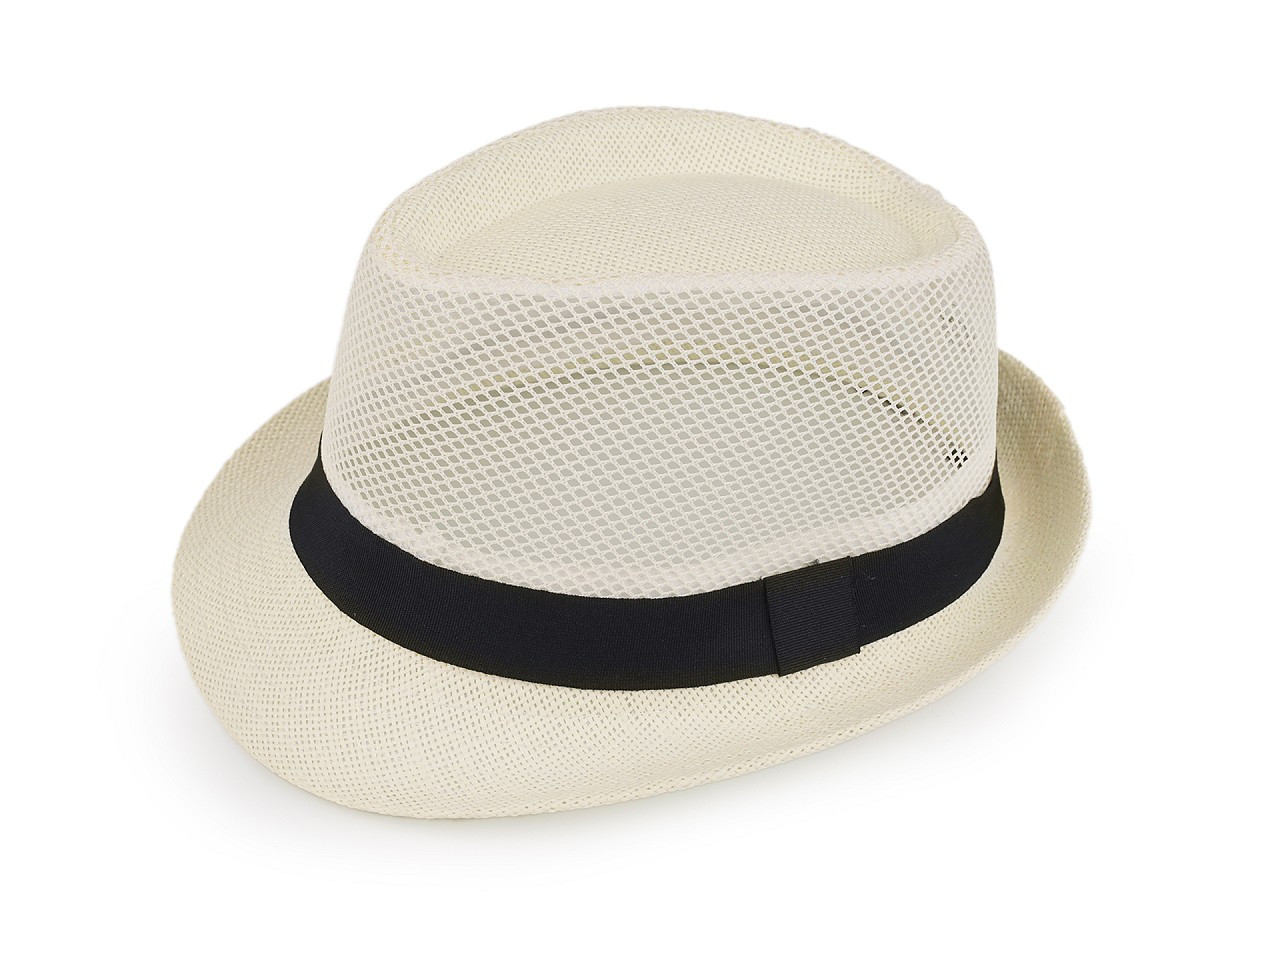 Letní klobouk / slamák unisex, barva 15 krémová světlá